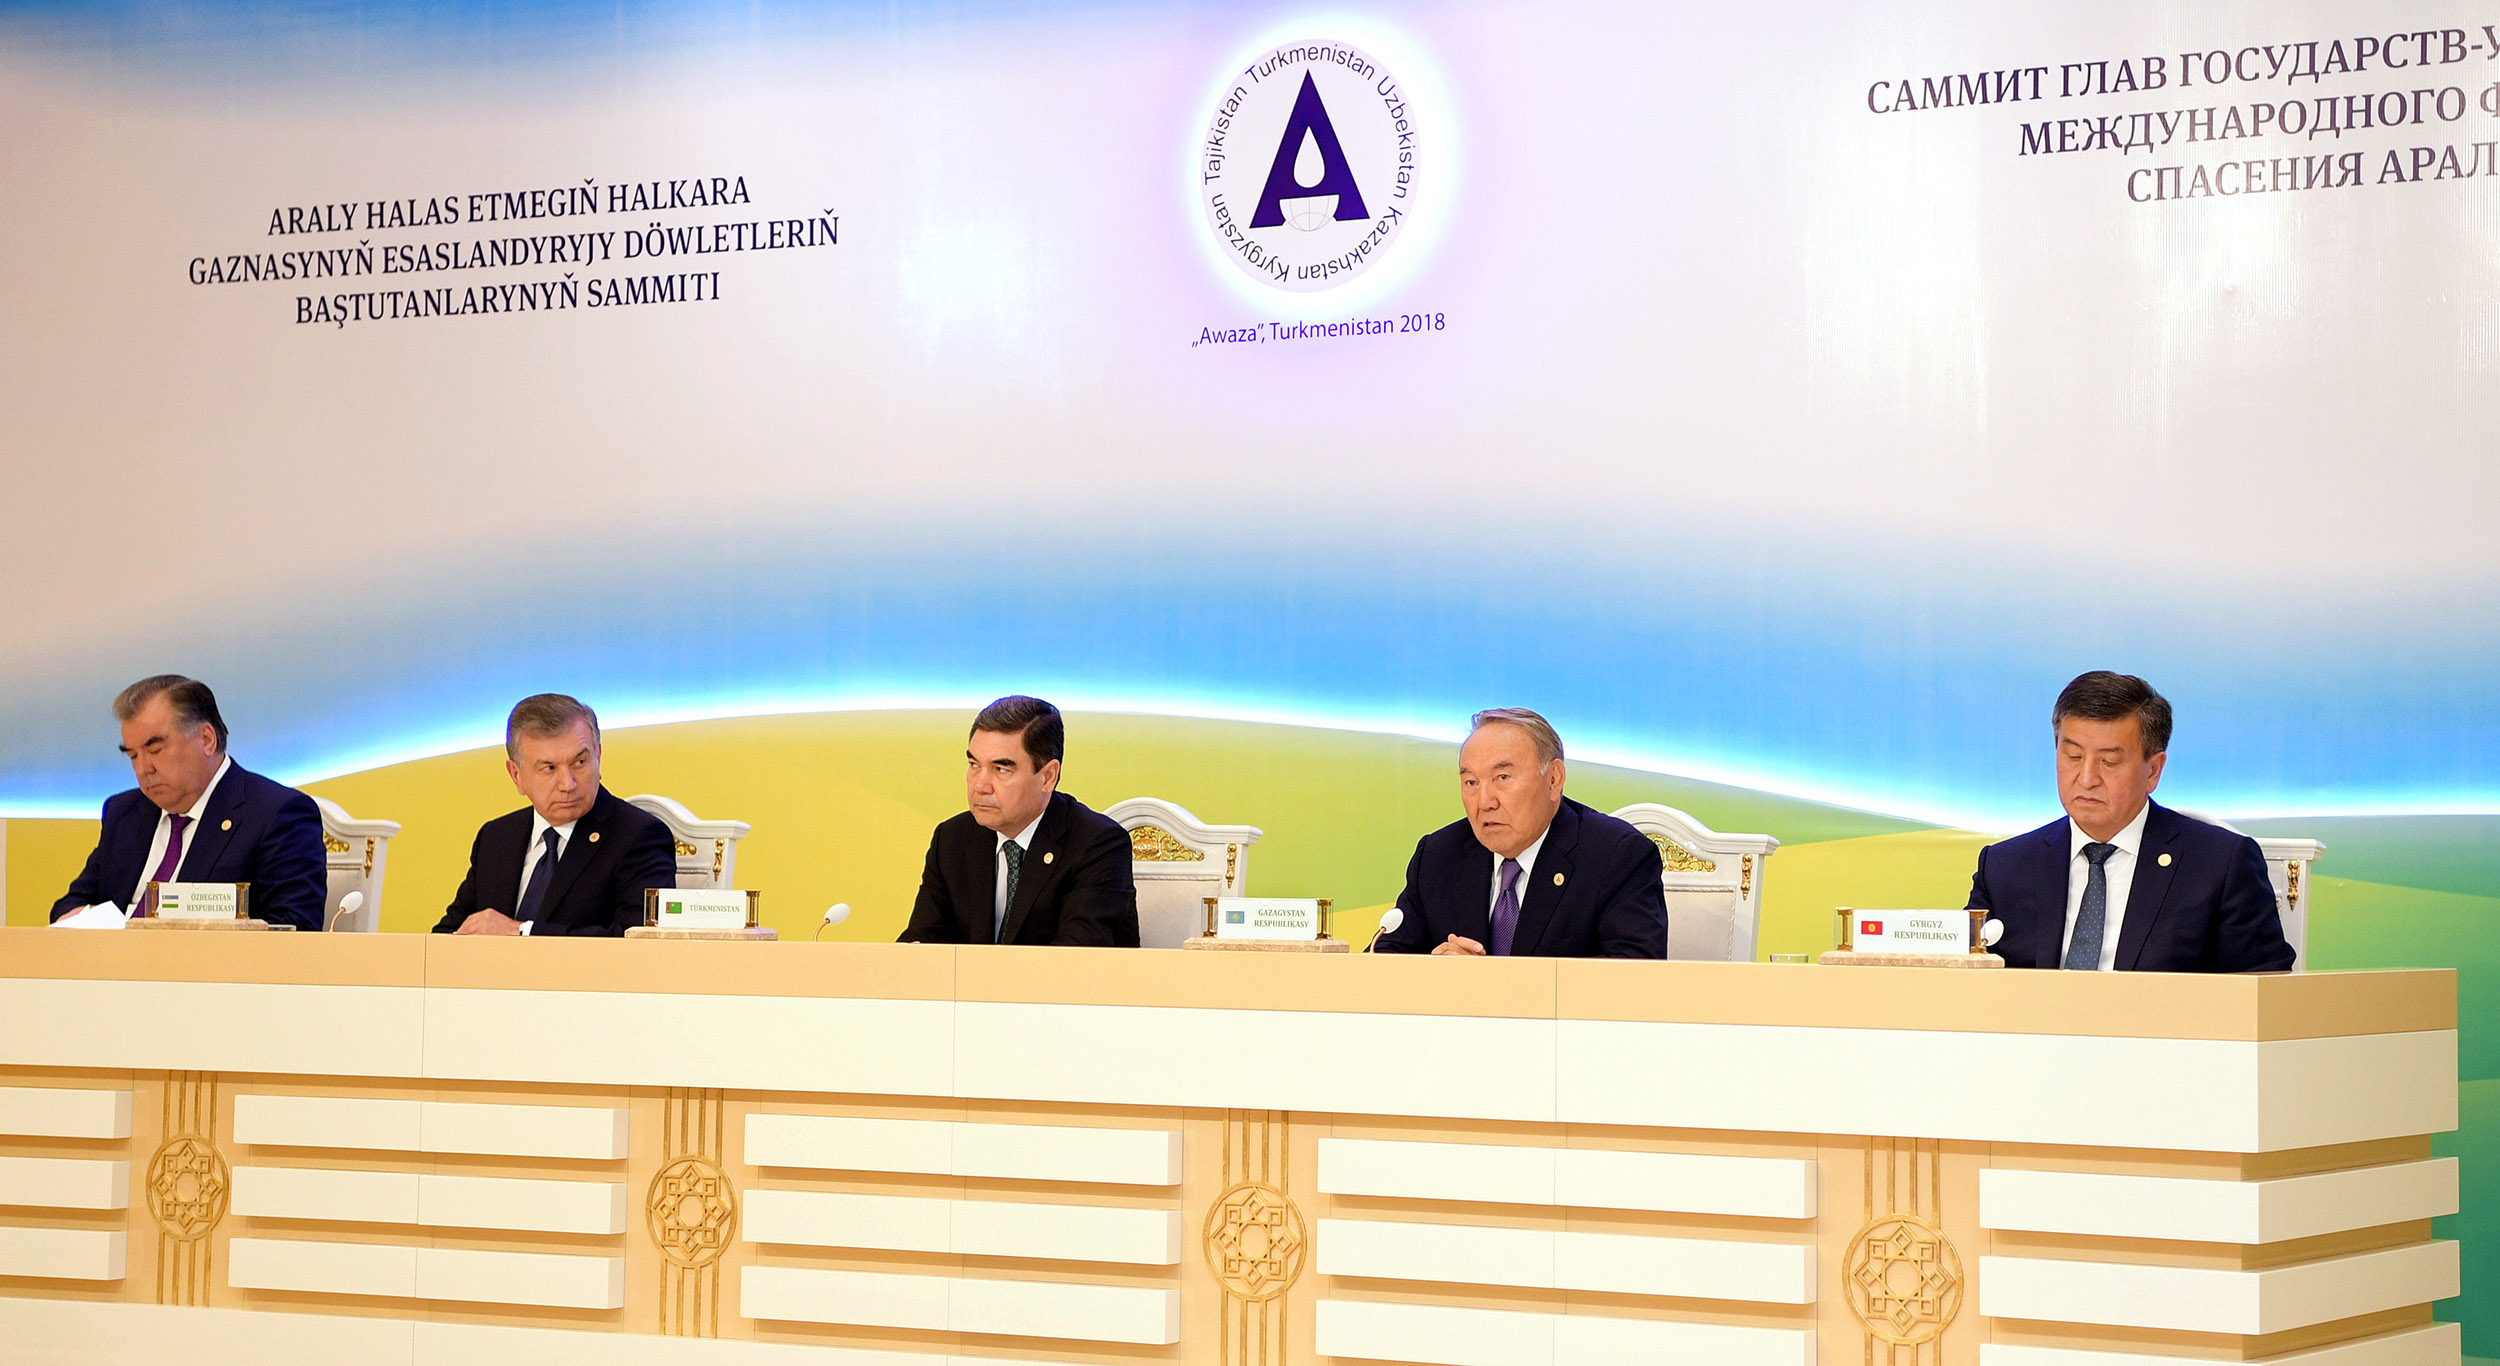 Нурсултан Назарбаев считает, что Аральский кризис стал крупнейшей экологической катастрофой в истории